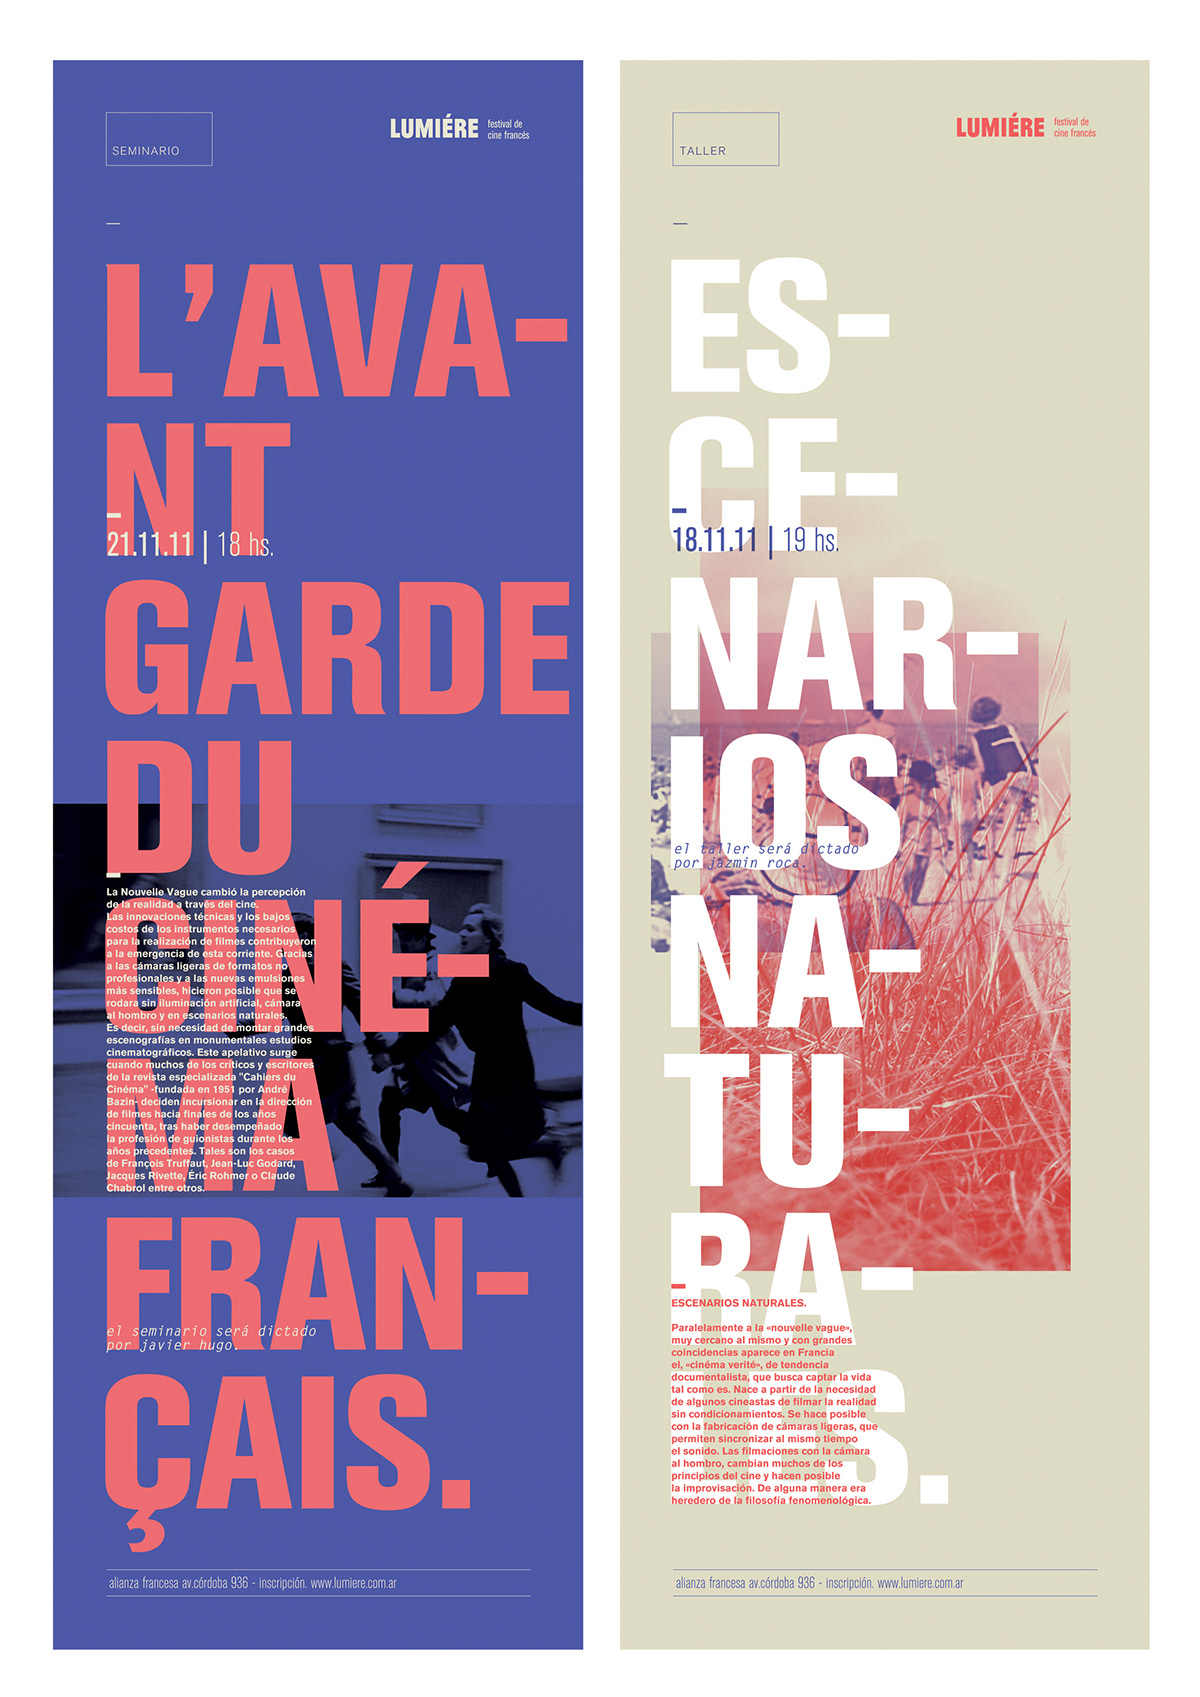 lumière cine frances festival